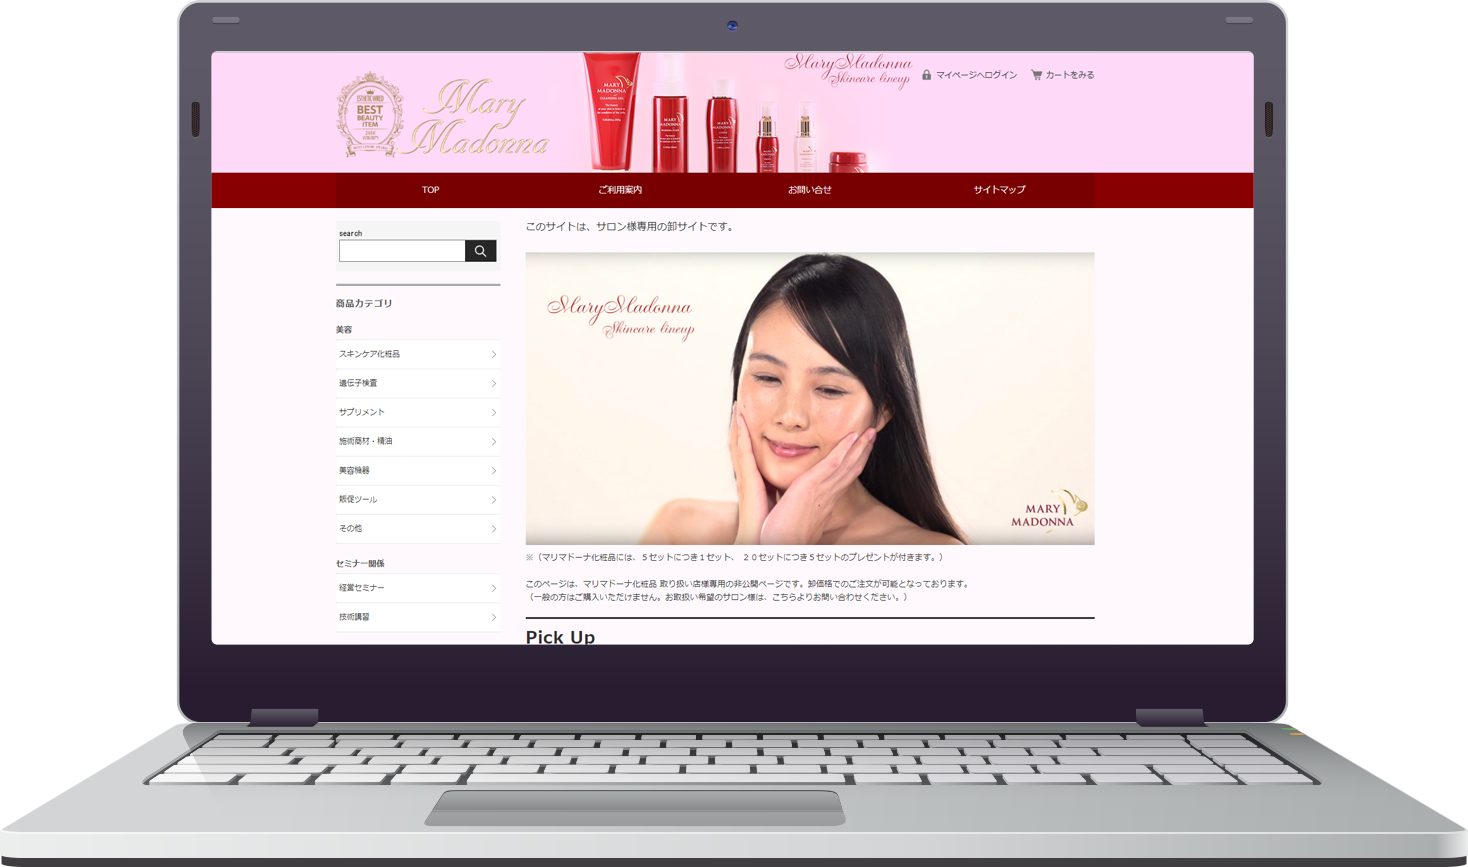 マリマドーナ化粧品 公式ウェブサイト